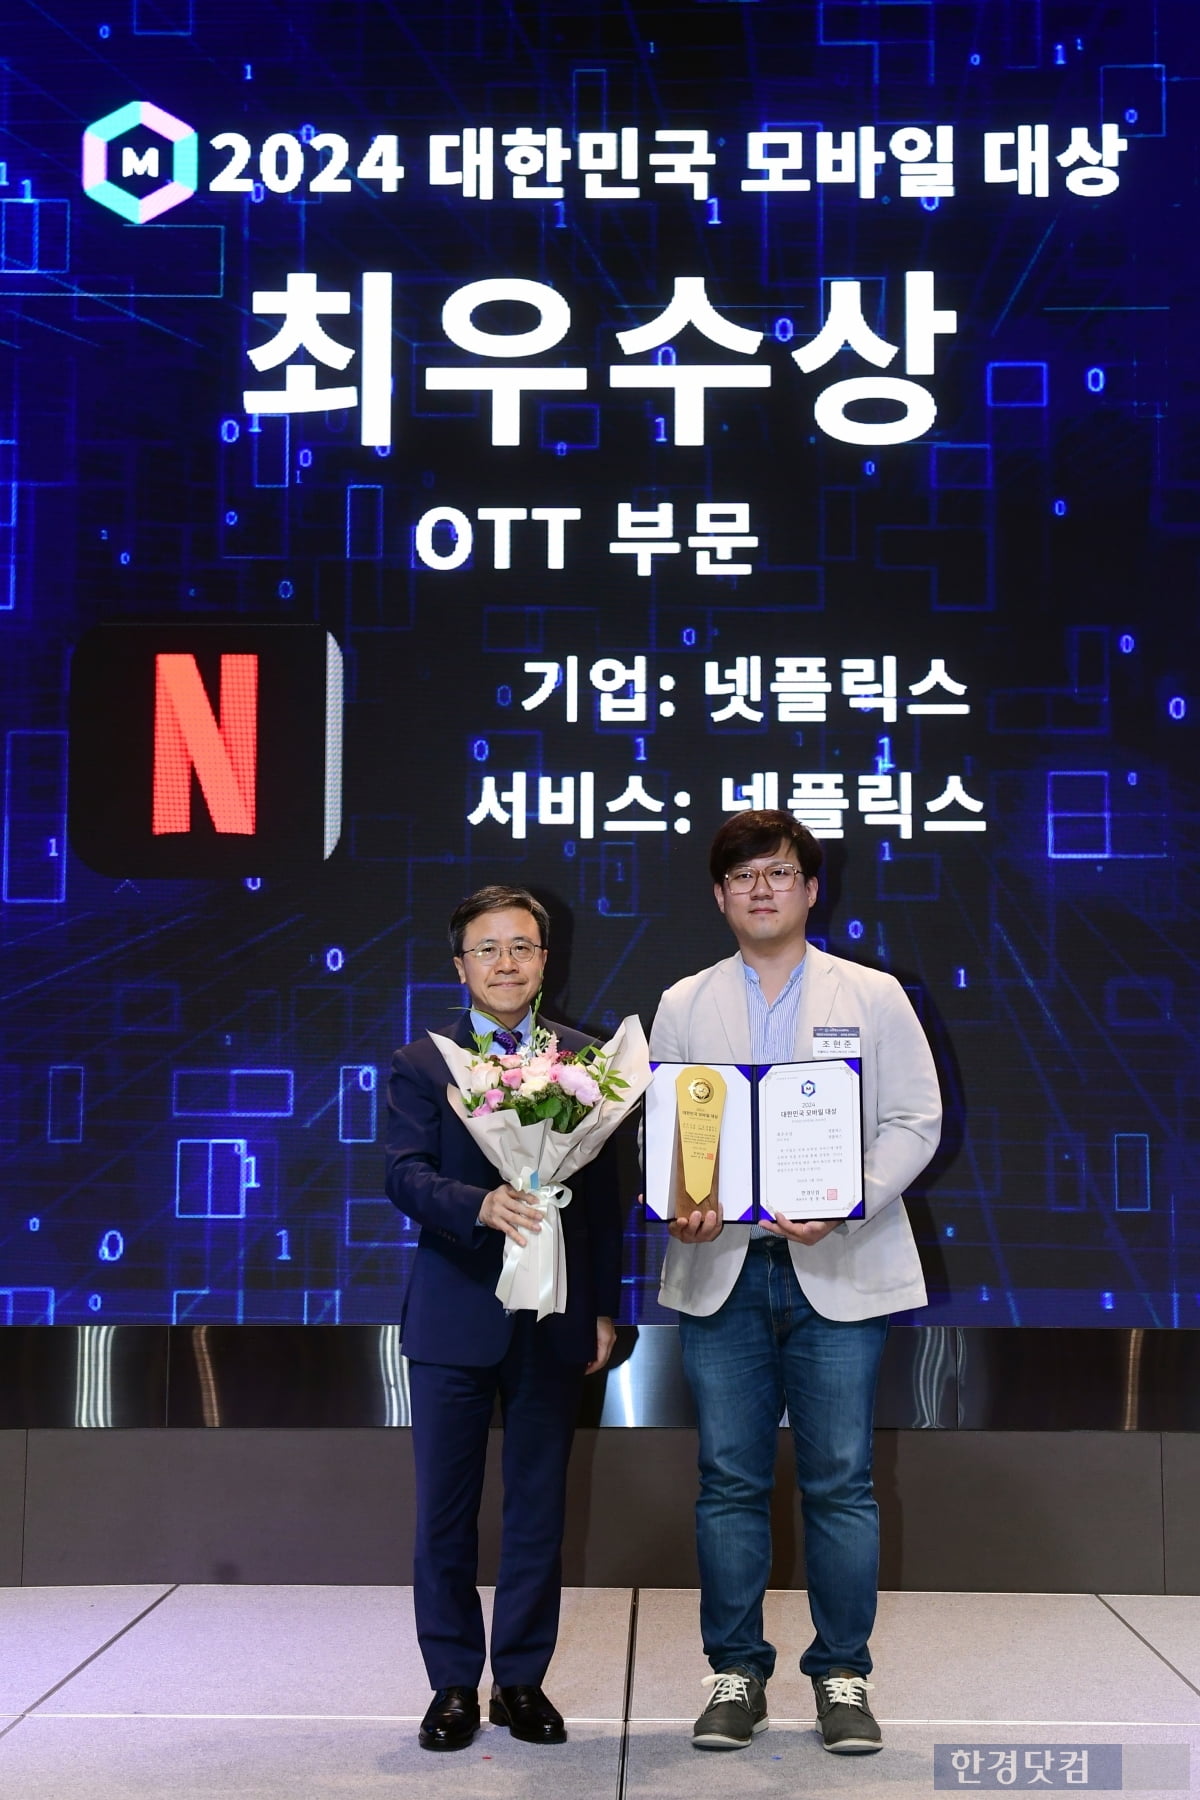 [포토] 넷플릭스, '2024 대한민국 모바일 대상' OTT 부문 최우수상 수상